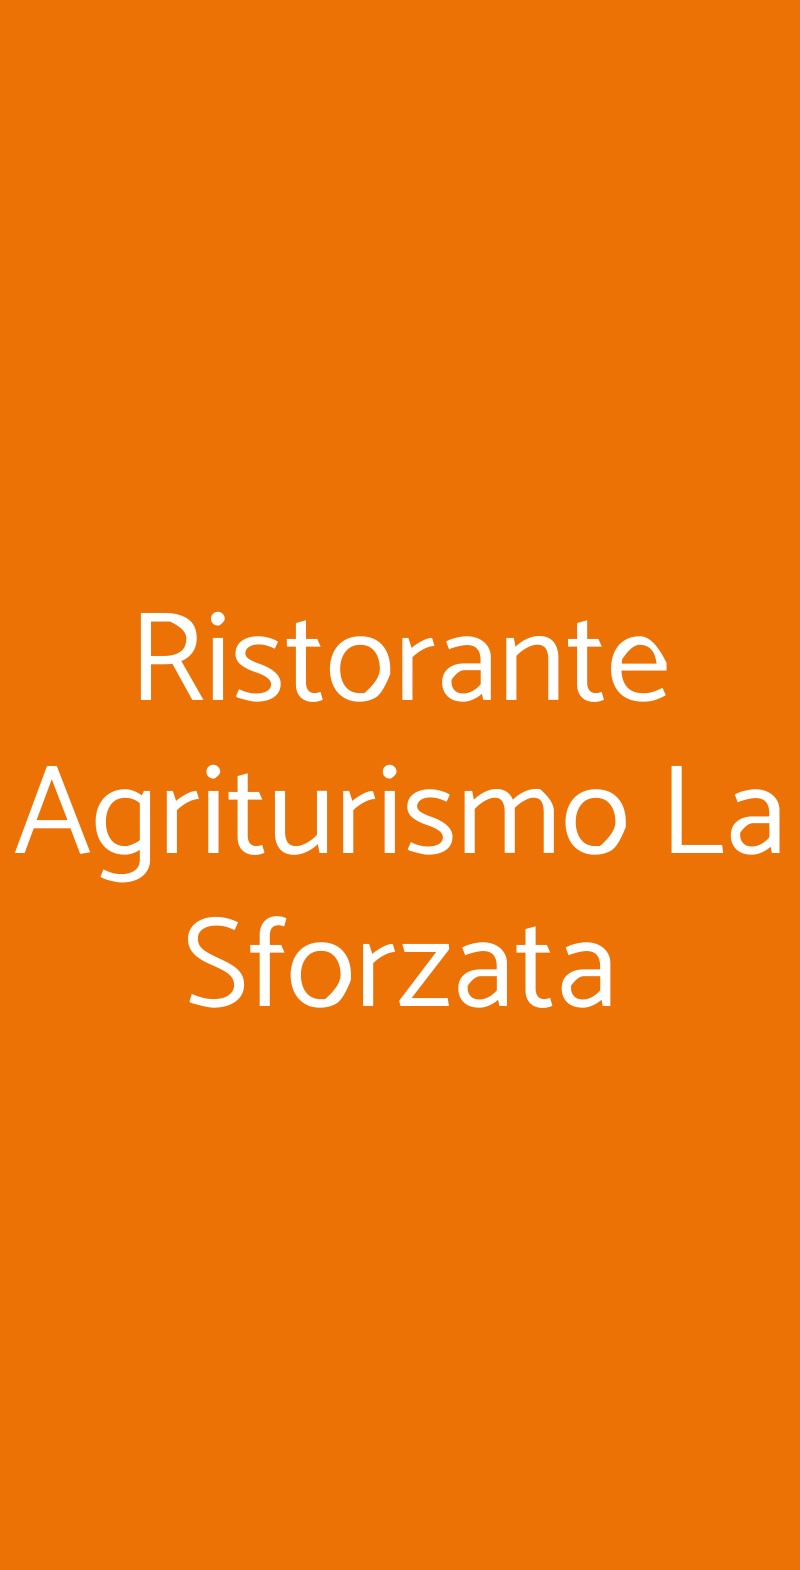 Ristorante Agriturismo La Sforzata Collegno menù 1 pagina